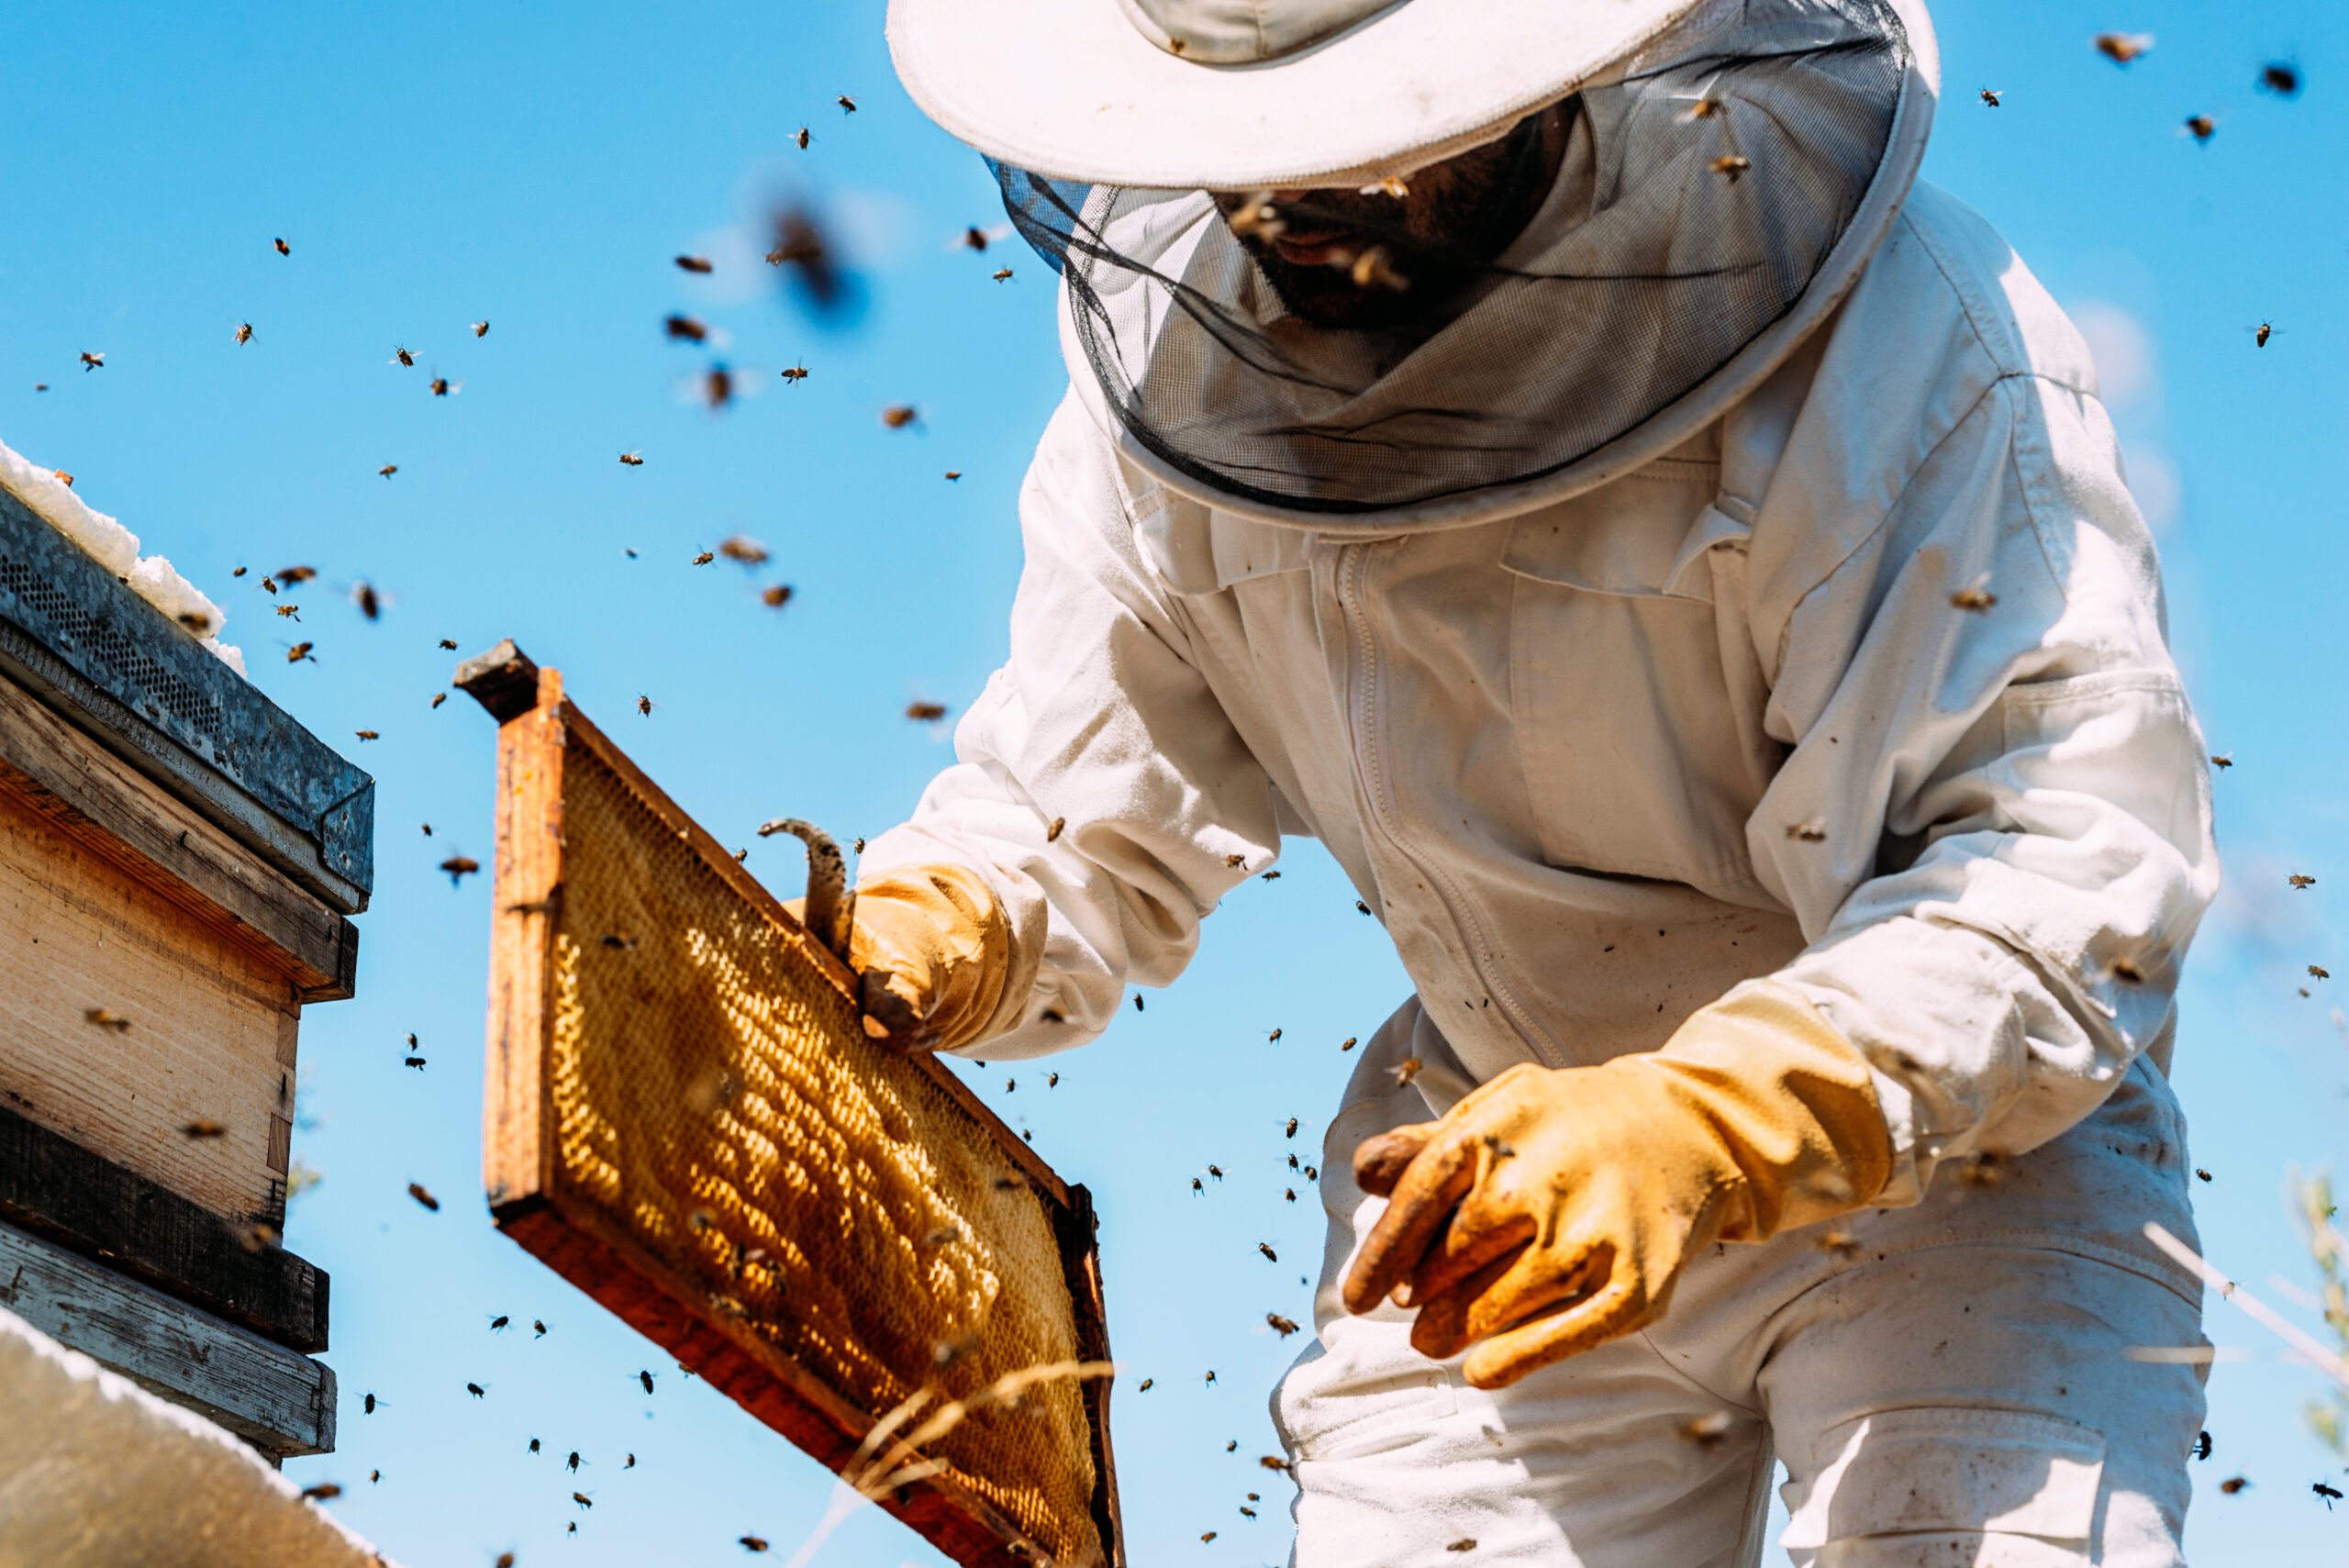 Pequena quantidade de ácaro pode infectar muitas abelhas, aponta estudo